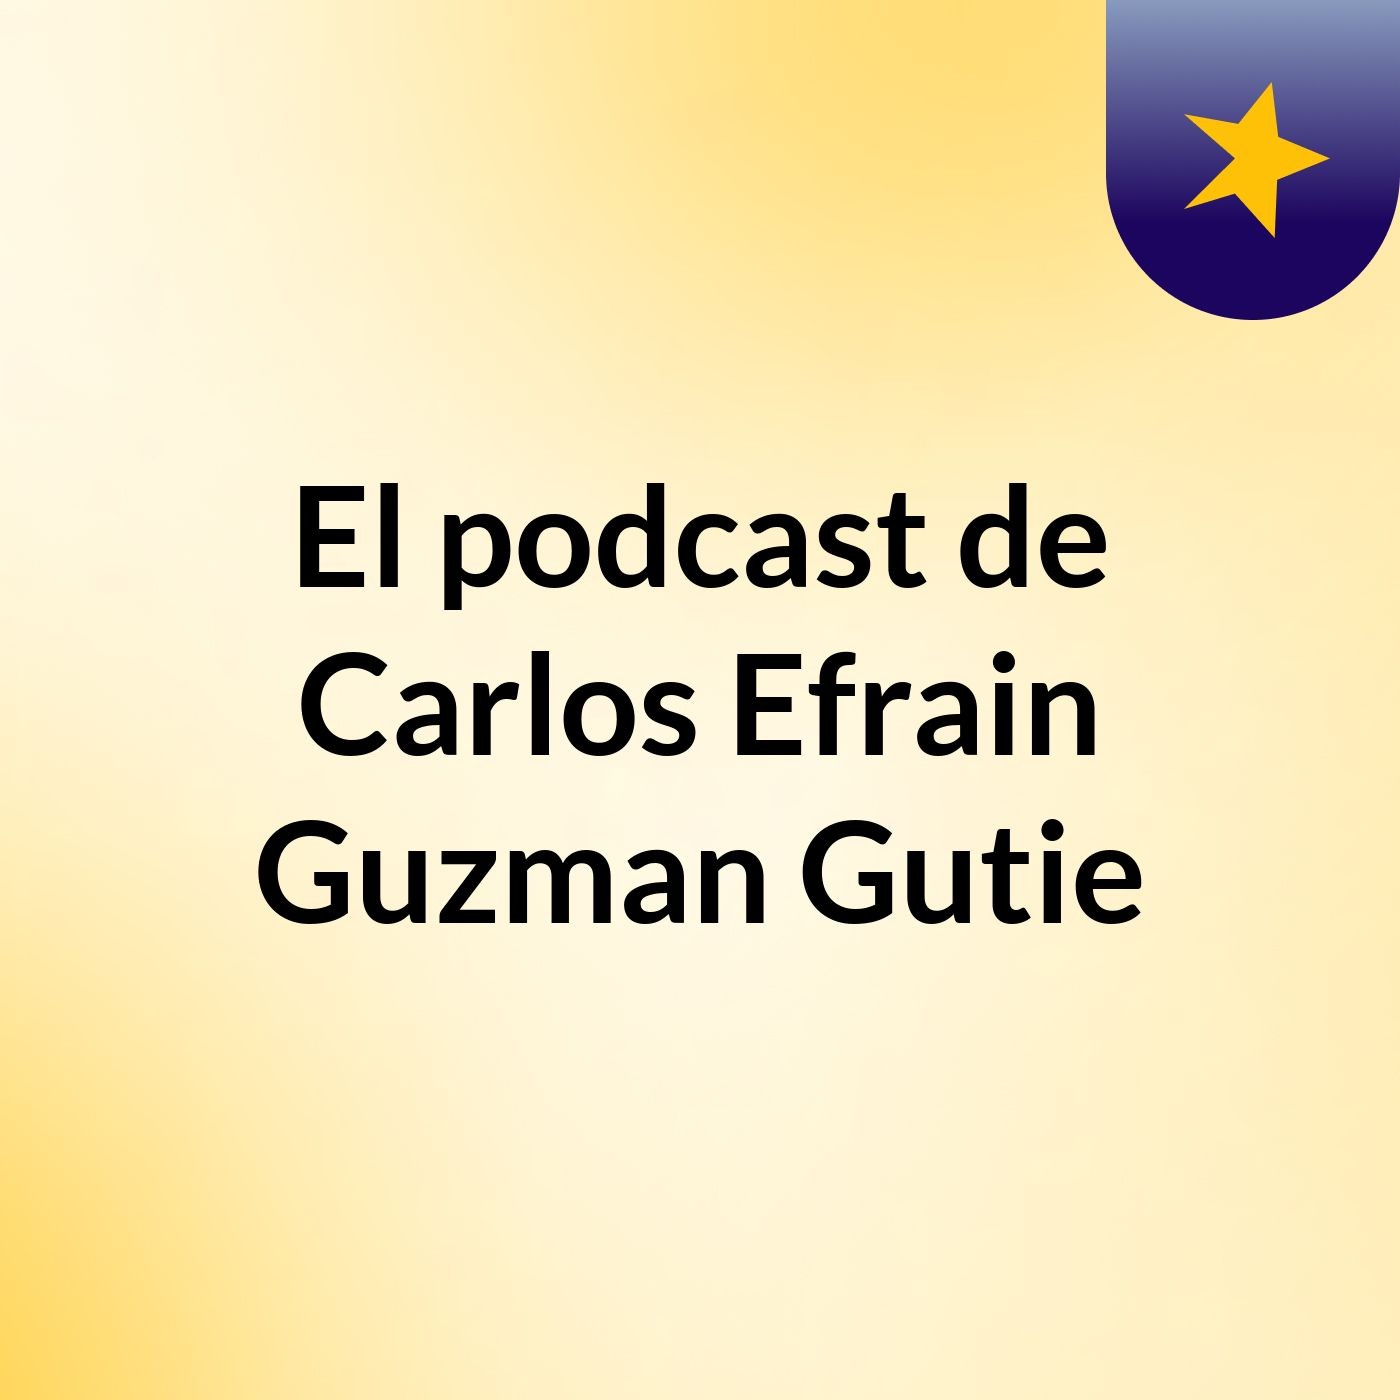 El podcast de Carlos Efrain Guzman Gutie